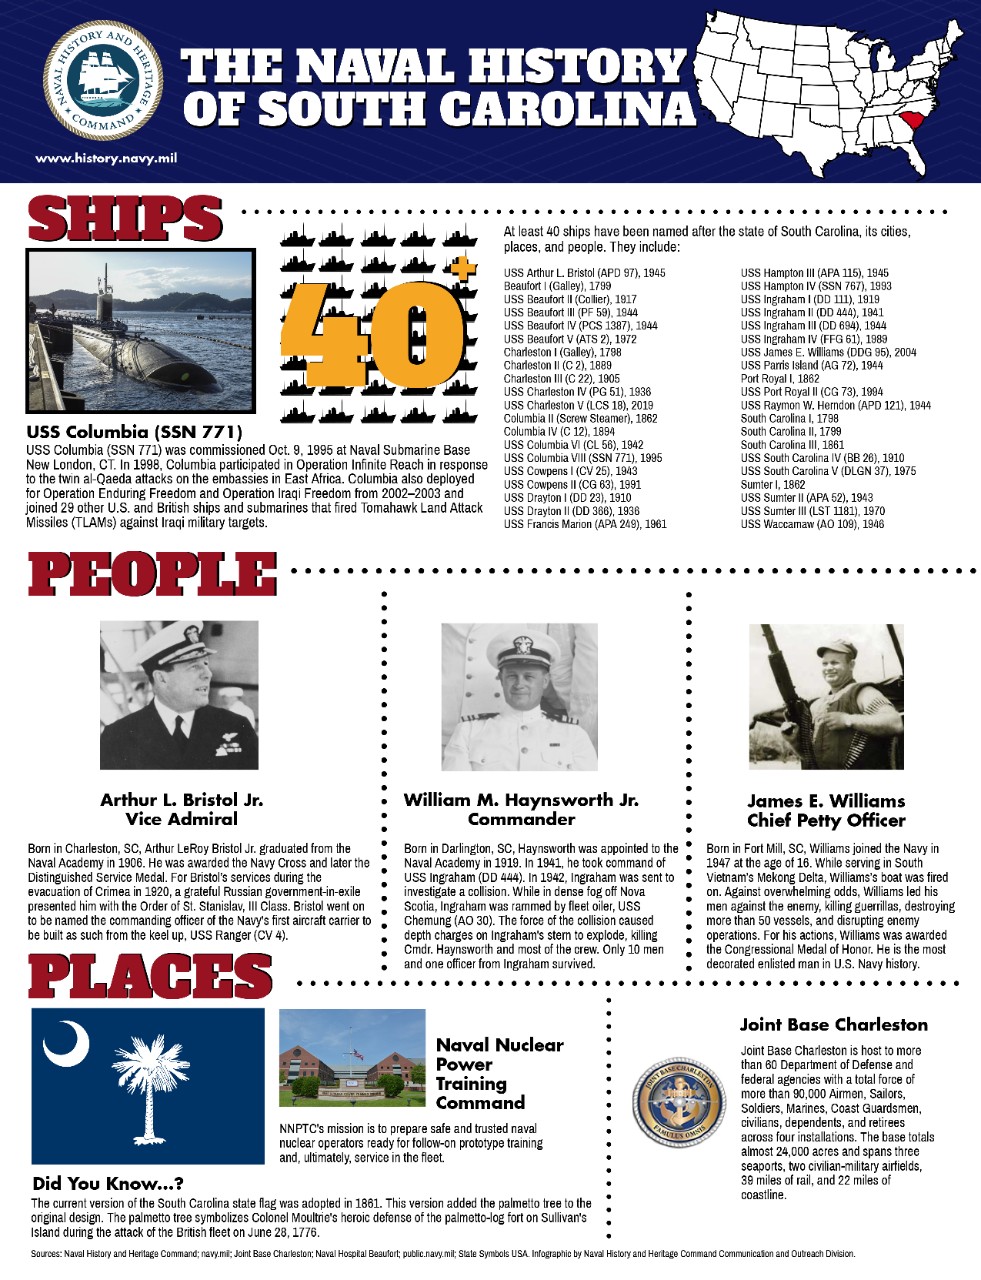 South Carolina's Naval History